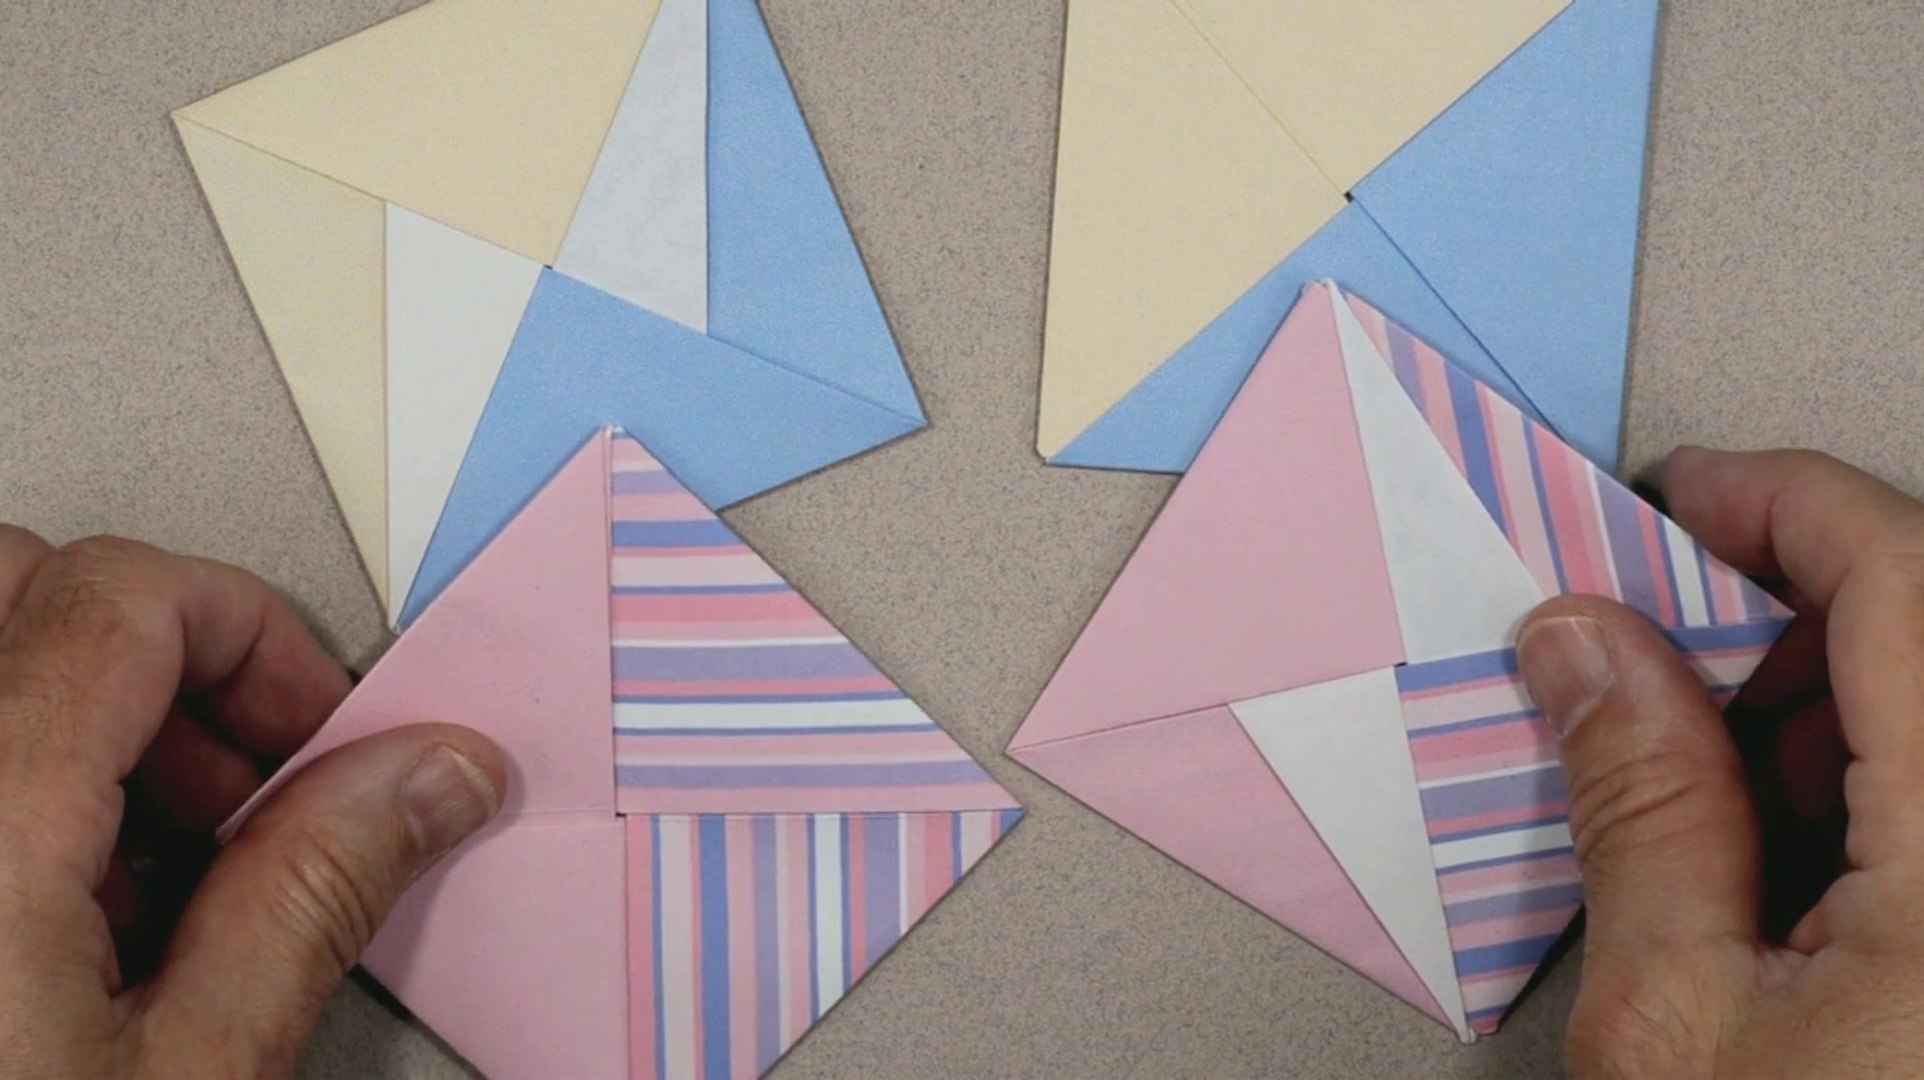 TUTO - Carré modulaire bicolore (origami), pouvant servir de sous-verre...  - Vidéo Dailymotion